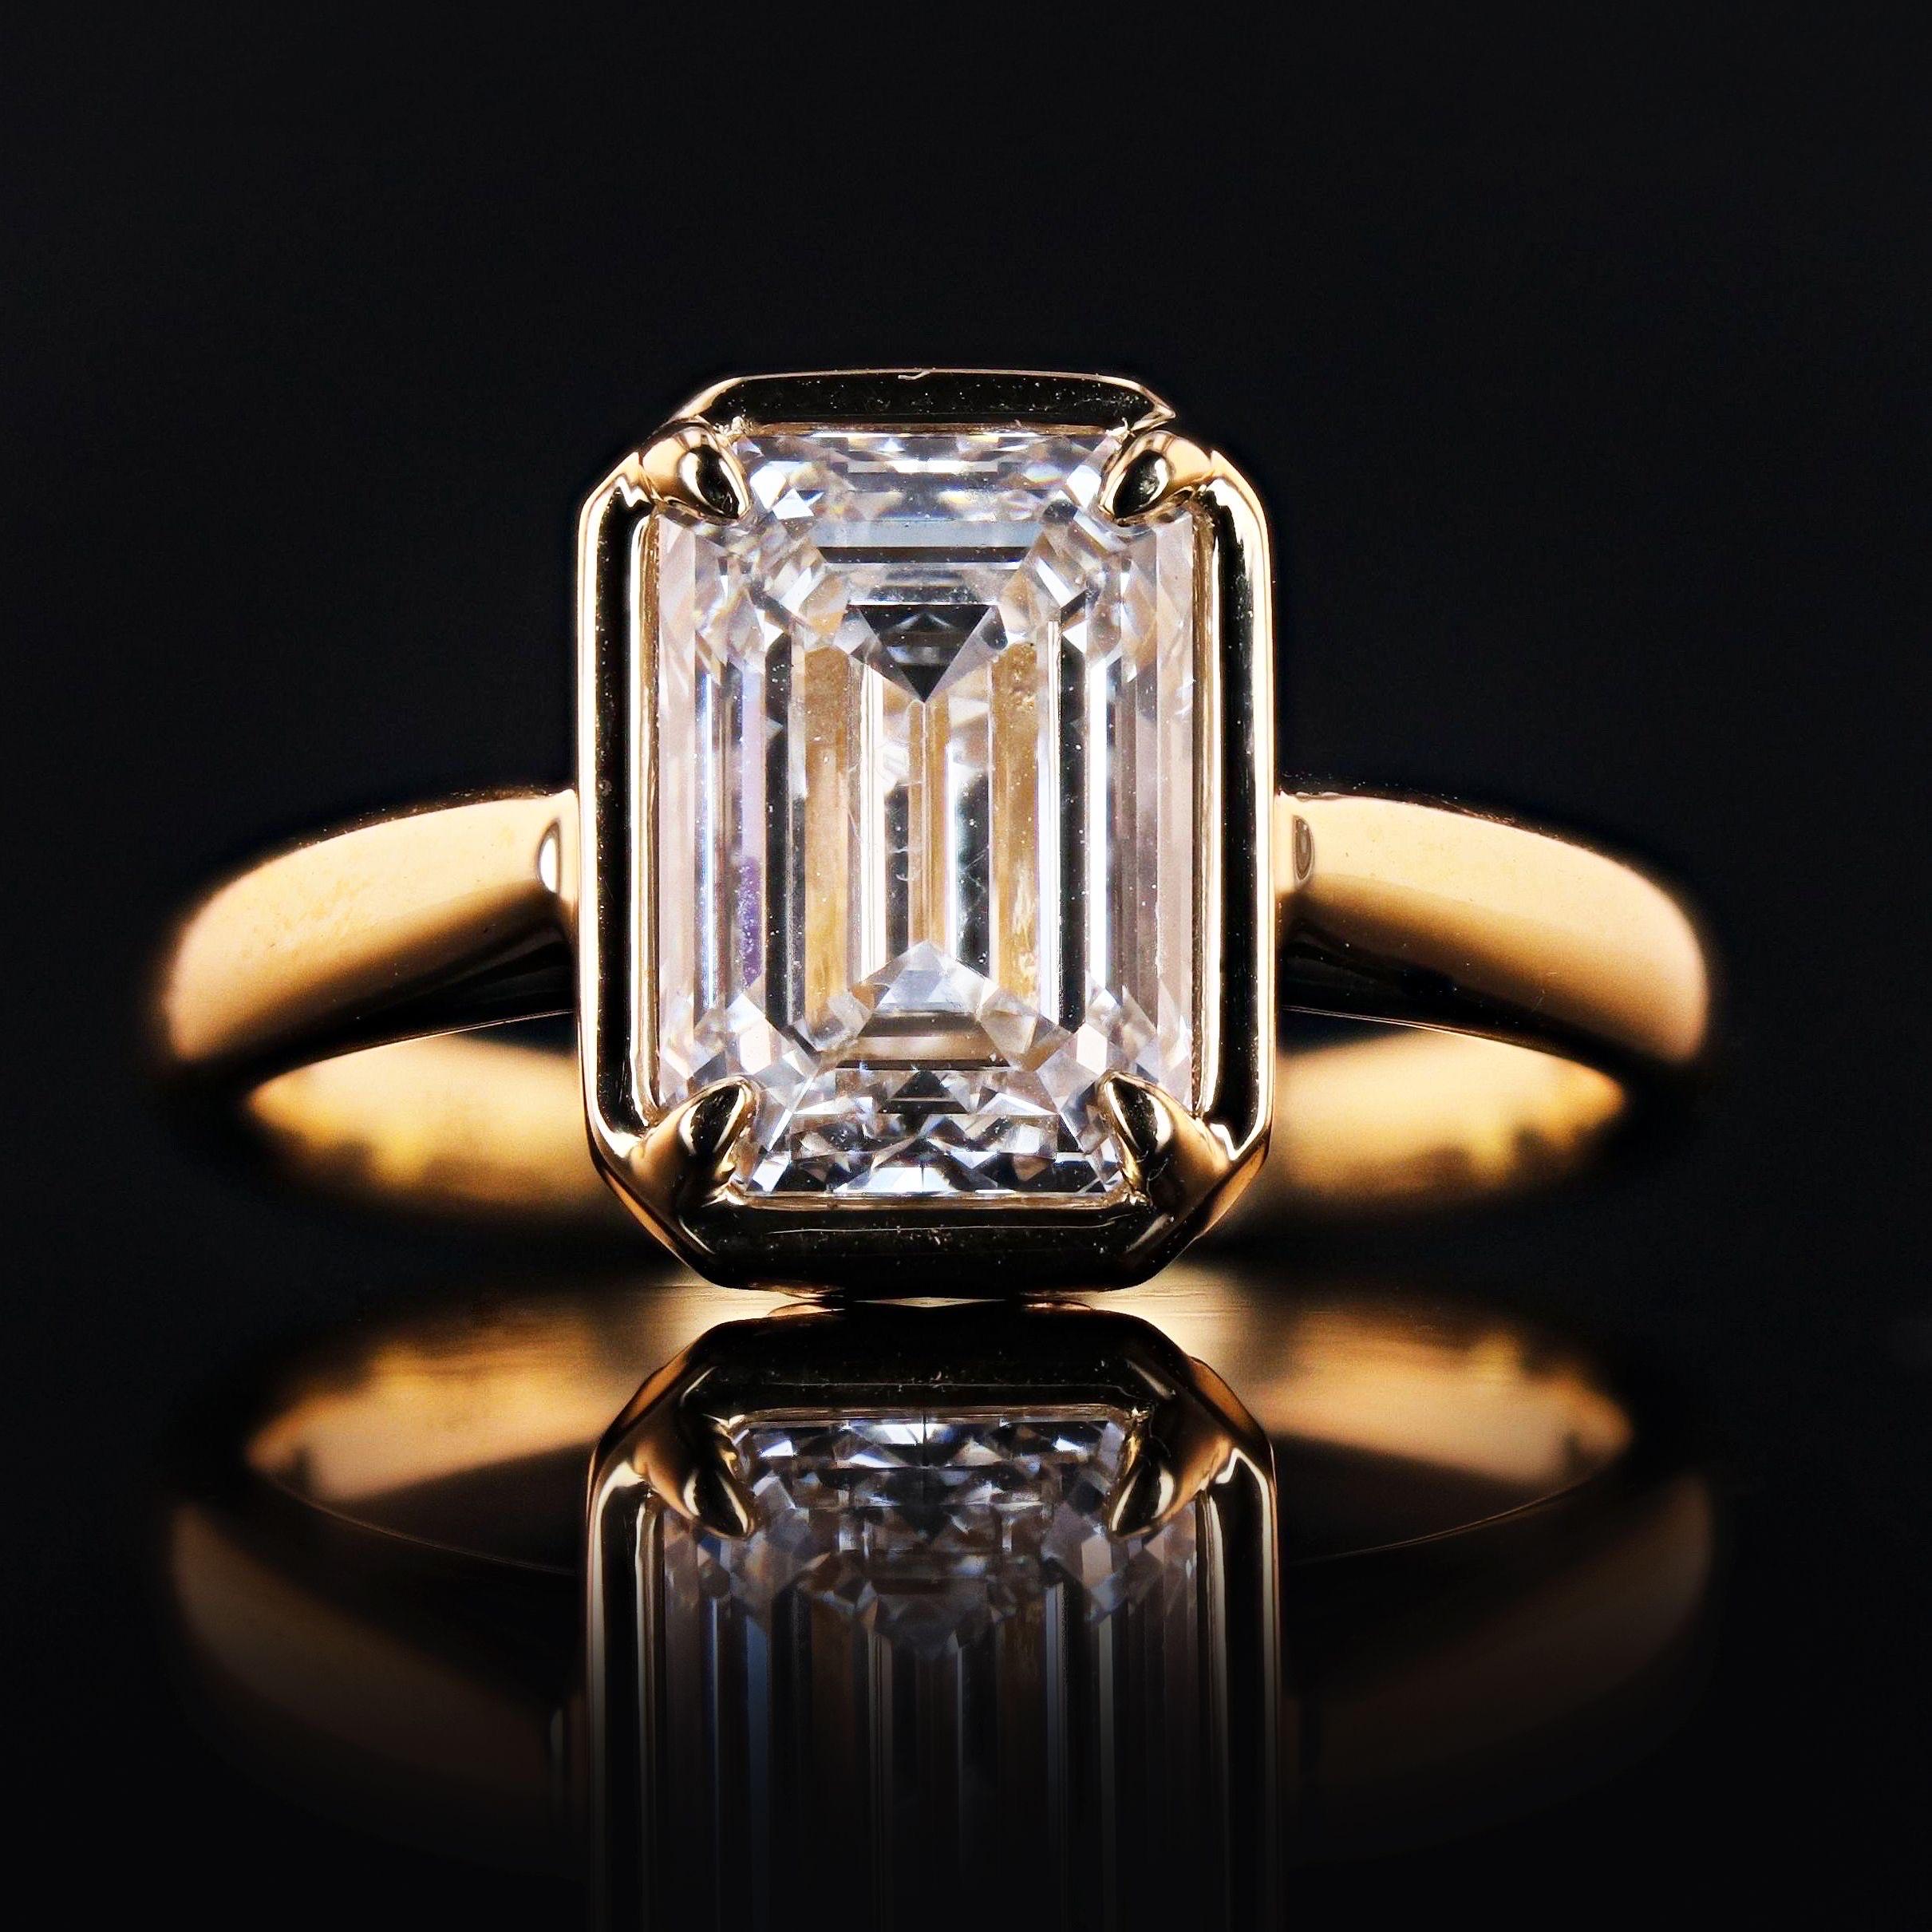 2.5 carat emerald cut diamond price